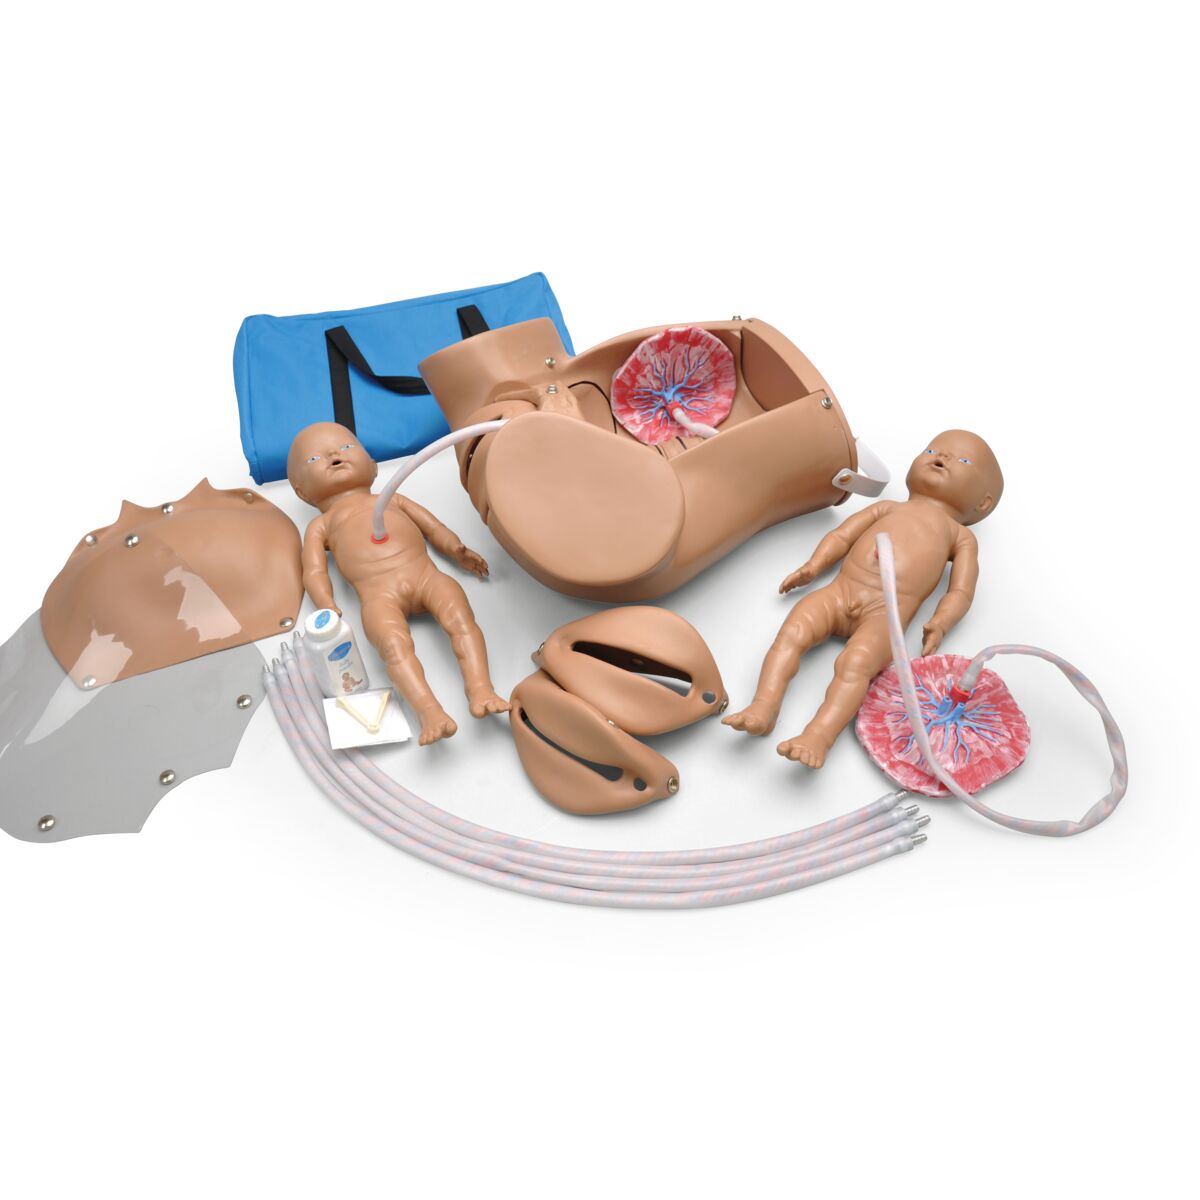 Birthing Simulator - 1005790 - W45025 - Gaumard - S500.M - OB/GYN Simulation  - OB/GYN Simulators - OB/GYN Trainers - OB/GYN Training - OB/GYN Models -  OB/GYN Patient Education